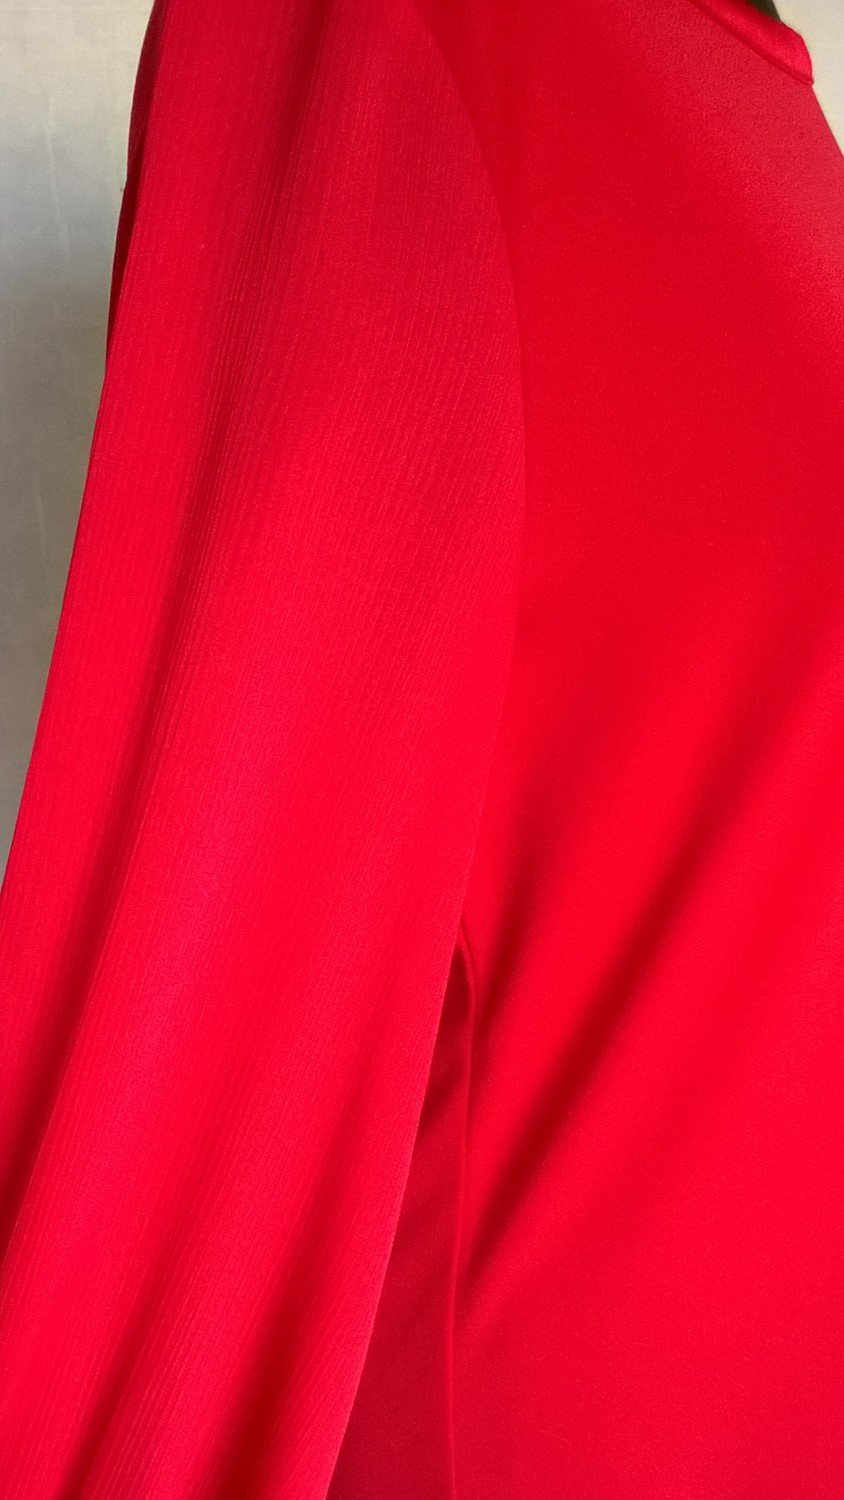 Bluse Schlupfbluse Oberteil Shirt Top ¾-Arm rot Gr. XS Esprit